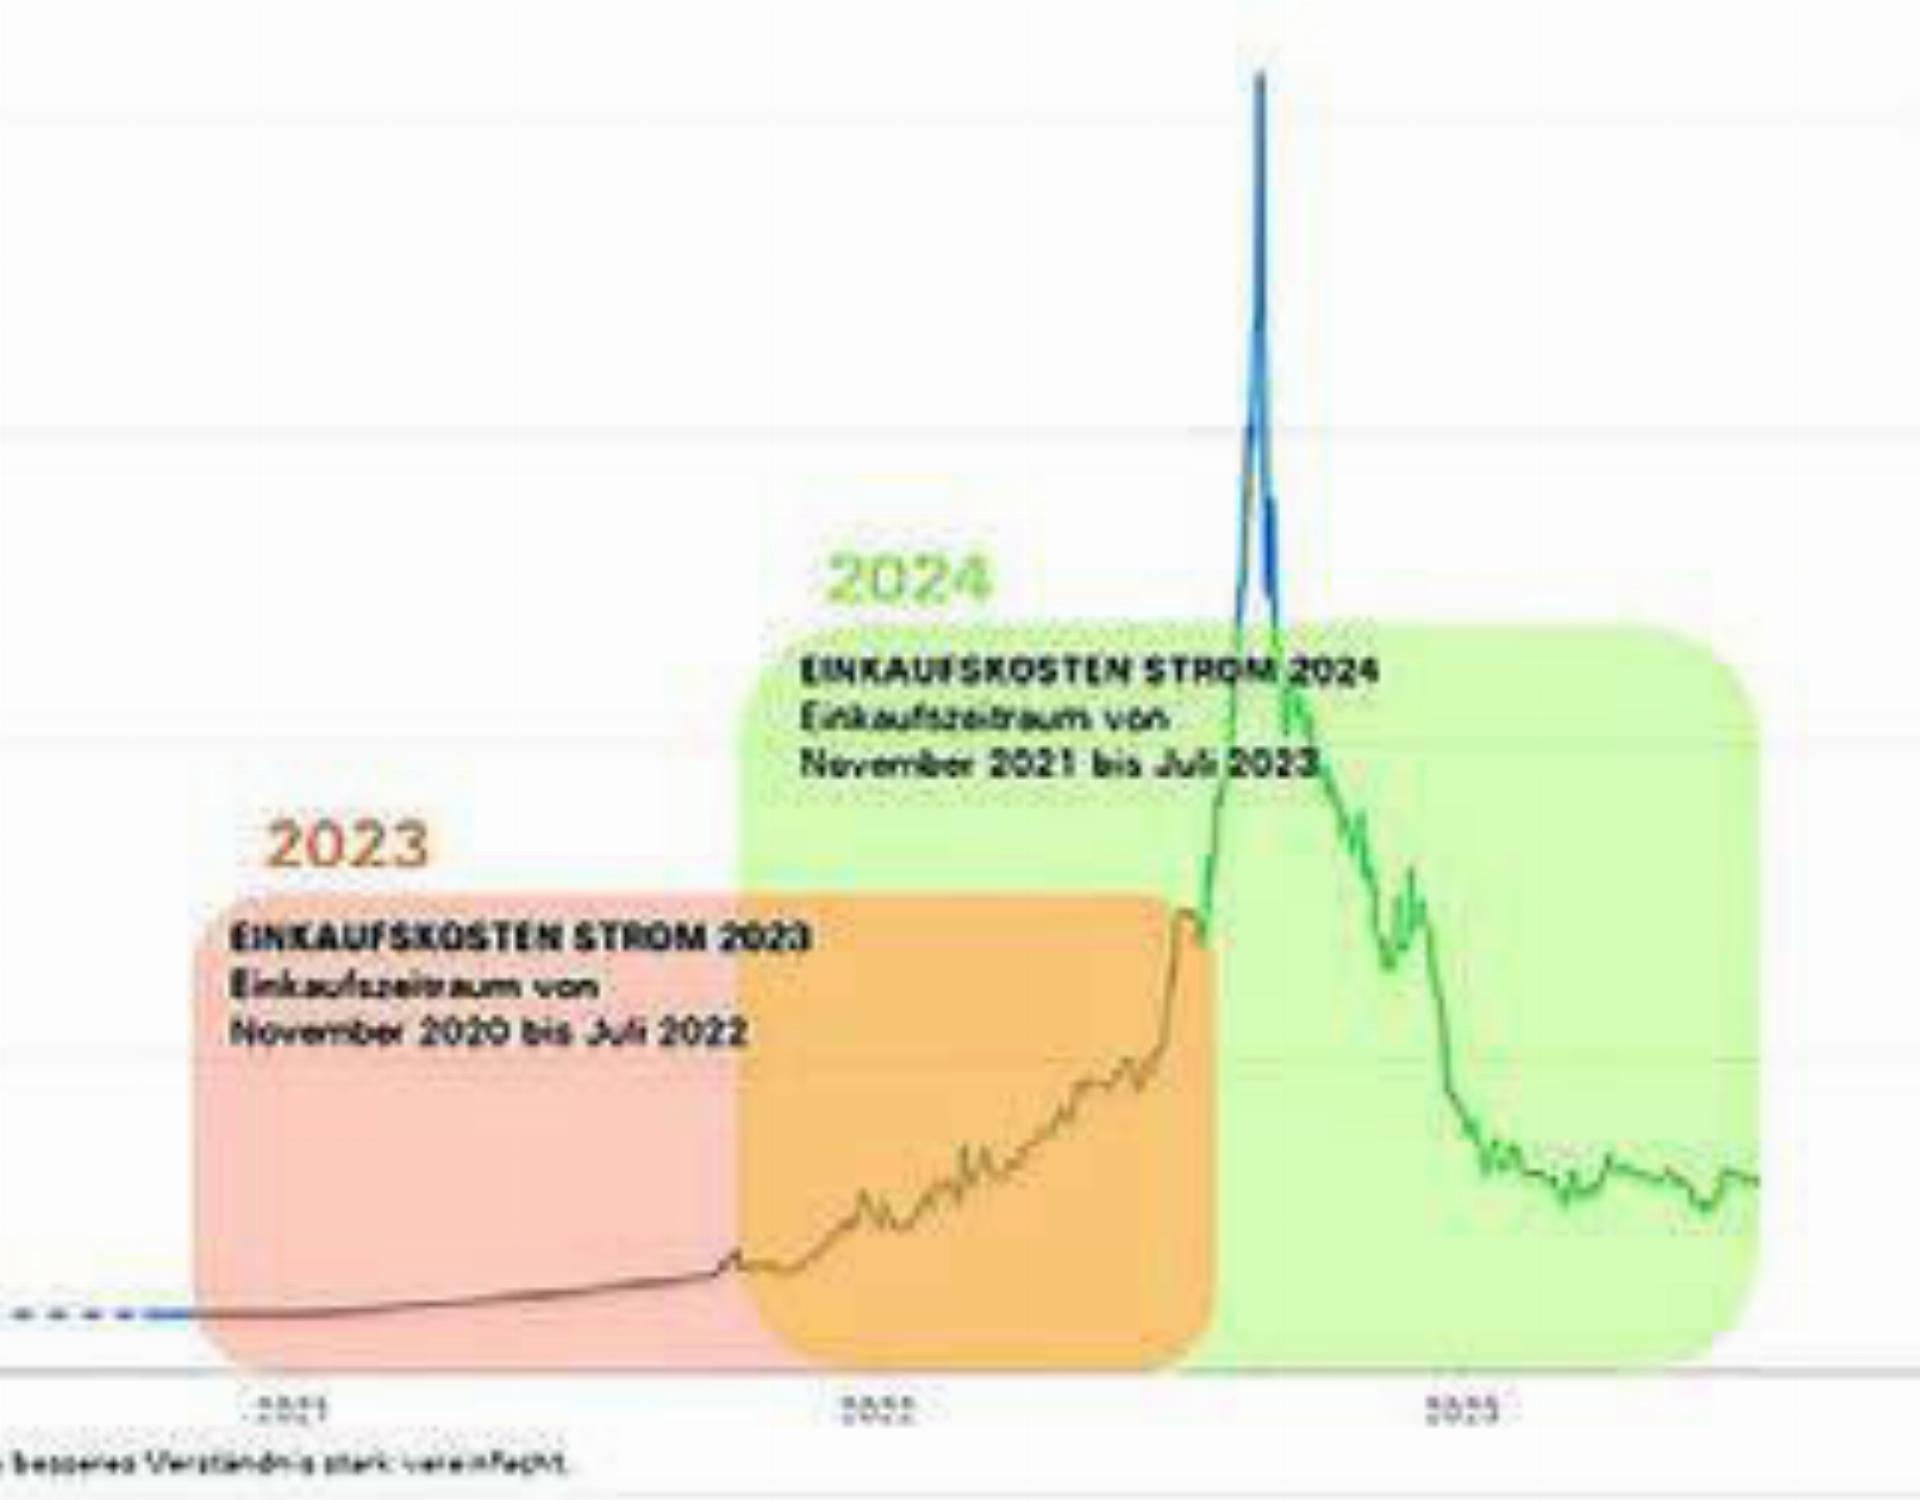 Interessante Grafik: In Rot der Beschaffungszeitraum für 2023, in Grün derjenige für 2024. Die blaue Kurve zeigt die Preisentwicklung. Grafik: zg